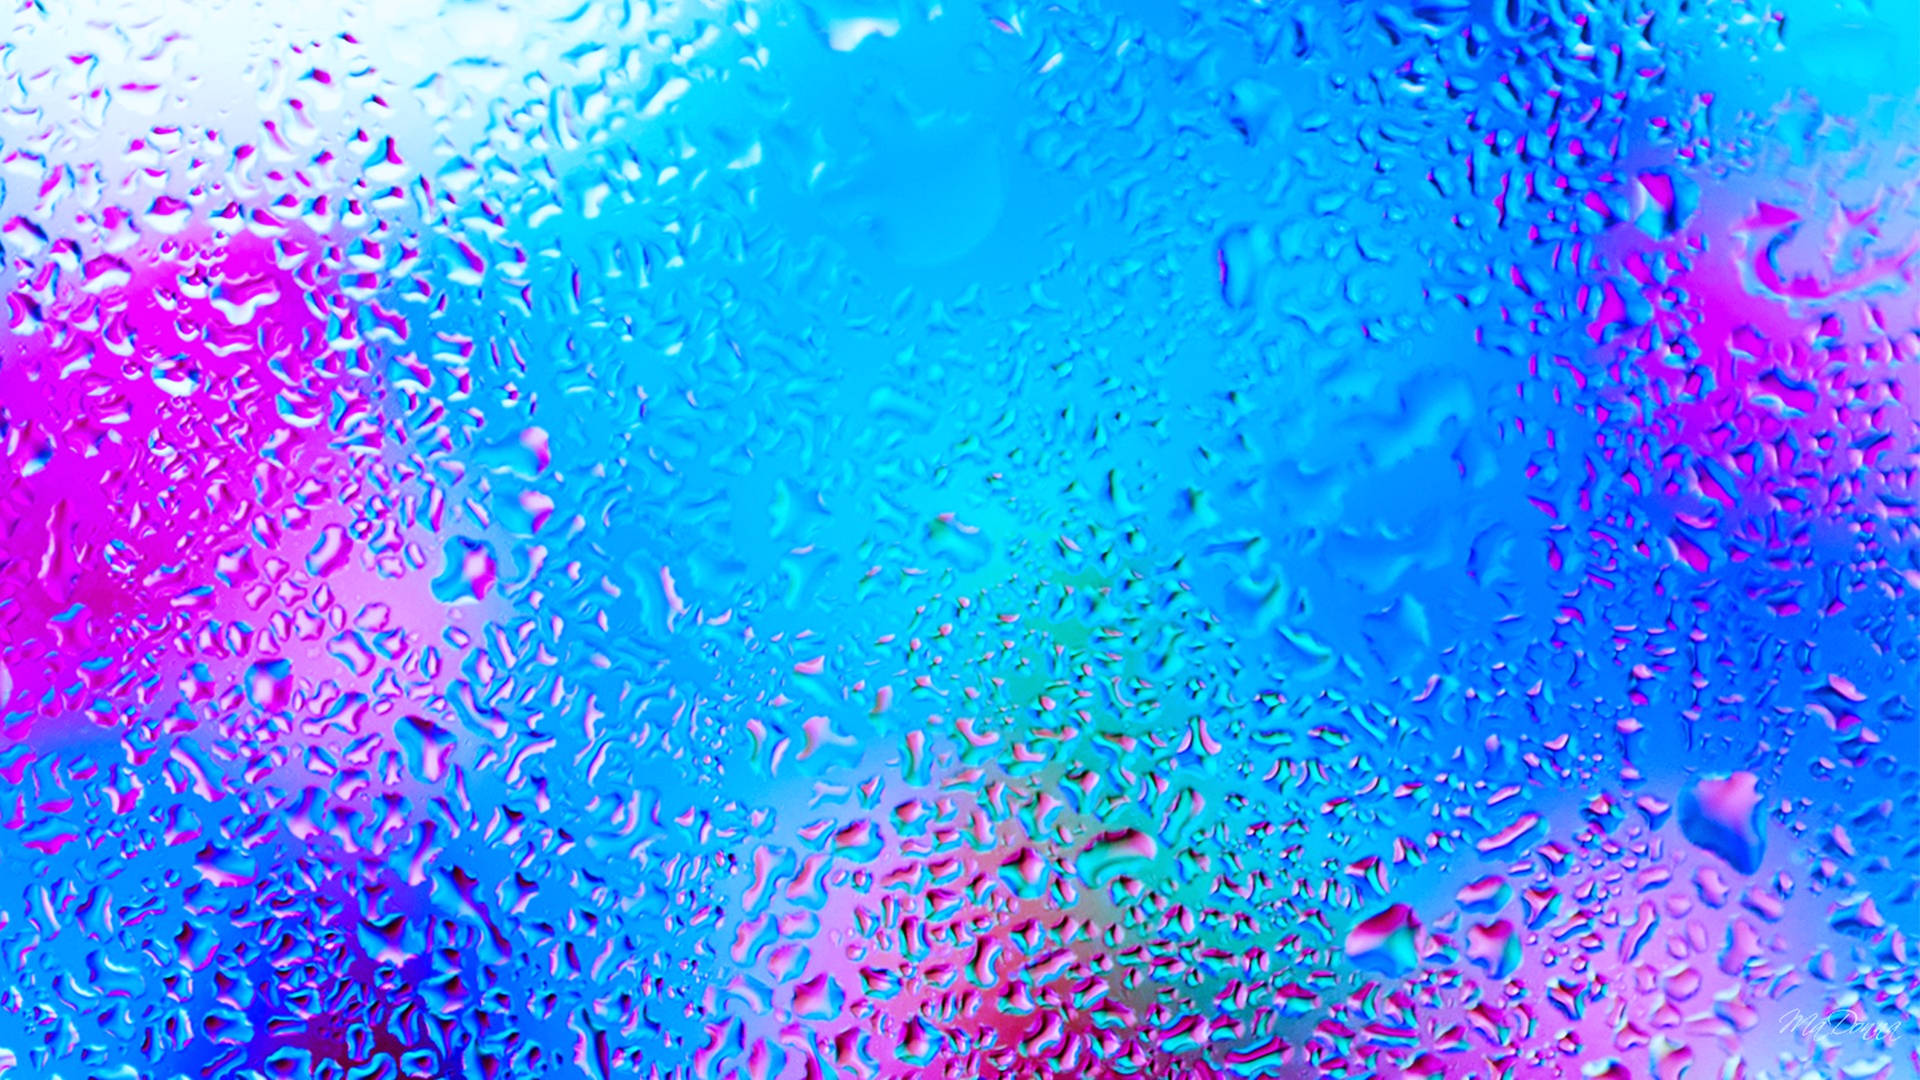 4d Ultra Hd Glass Rainwater